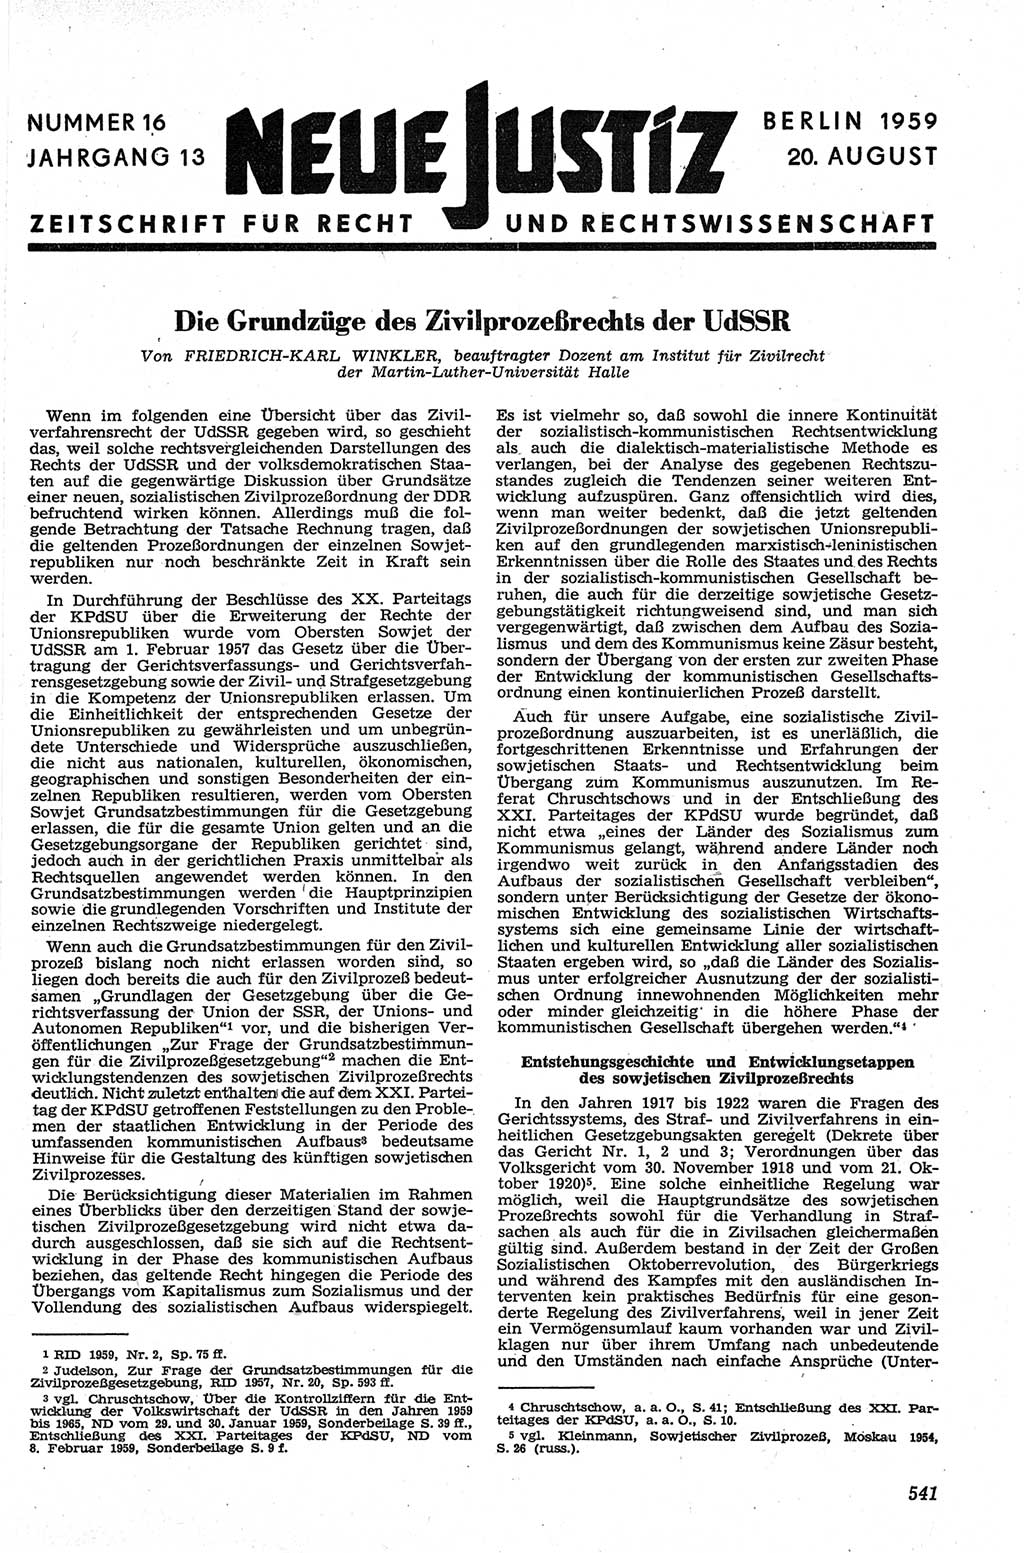 Neue Justiz (NJ), Zeitschrift für Recht und Rechtswissenschaft [Deutsche Demokratische Republik (DDR)], 13. Jahrgang 1959, Seite 541 (NJ DDR 1959, S. 541)